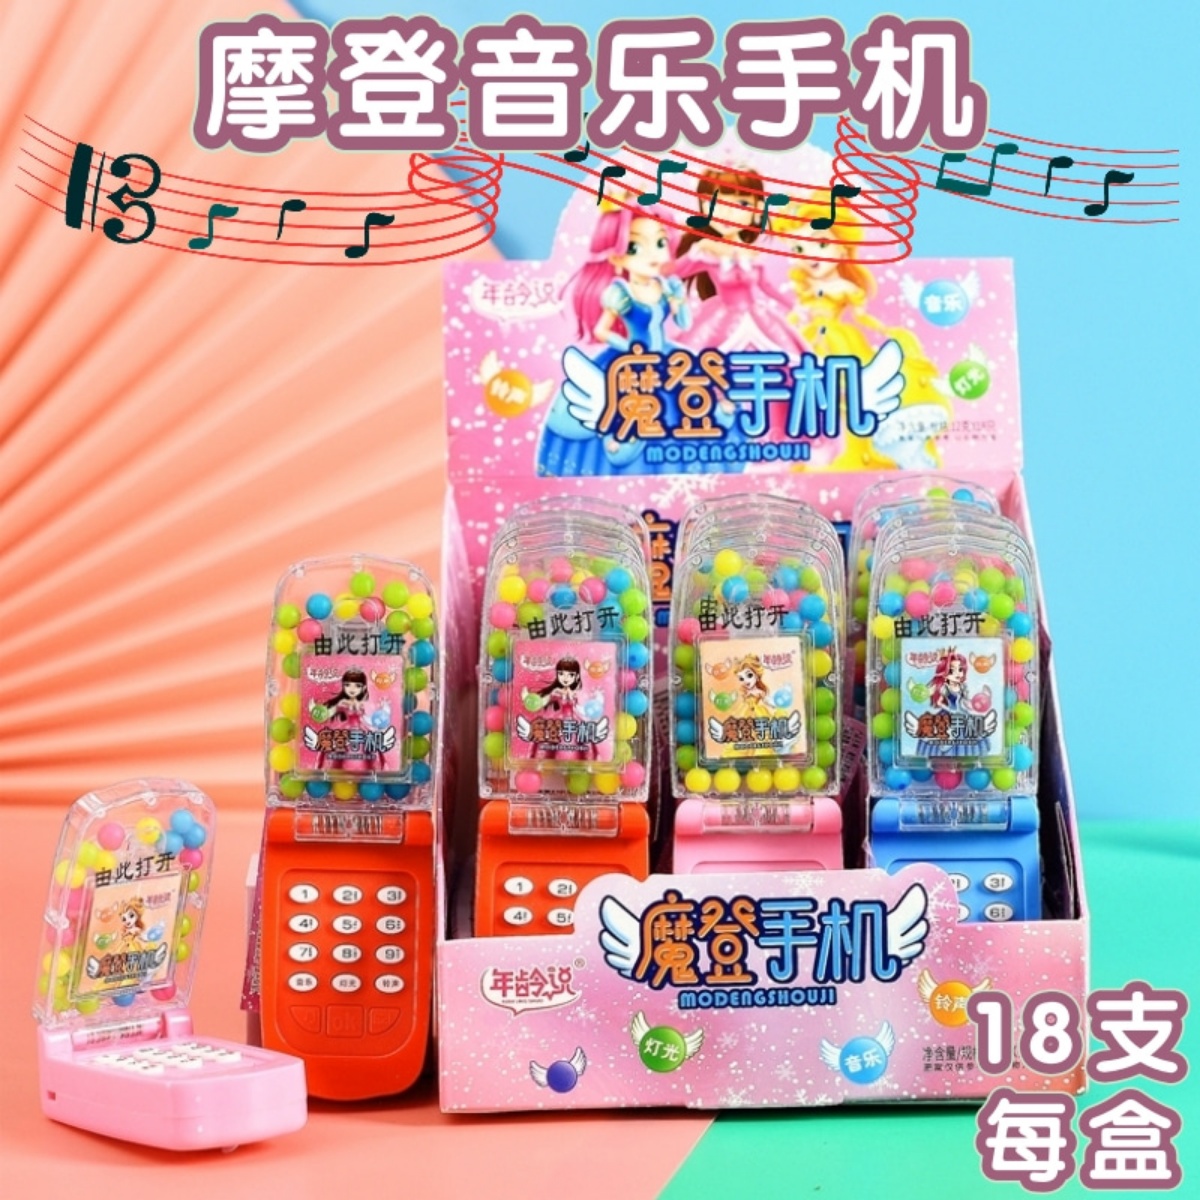 手机糖音乐电话糖网红创意零食棒棒糖可爱闪光儿童糖果盒装玩具糖